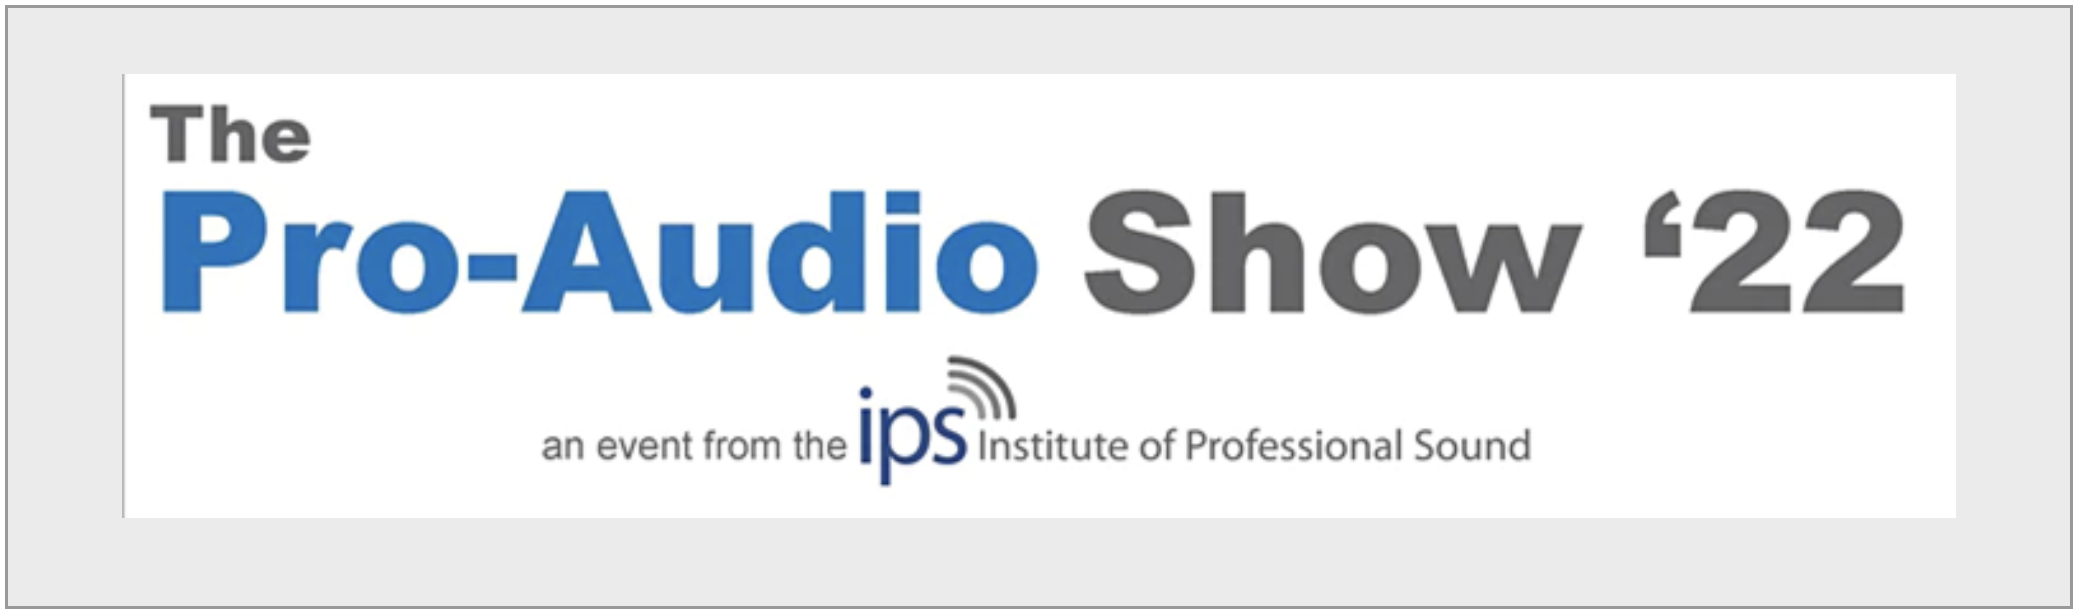 The IPS Pro Audio Show 2022